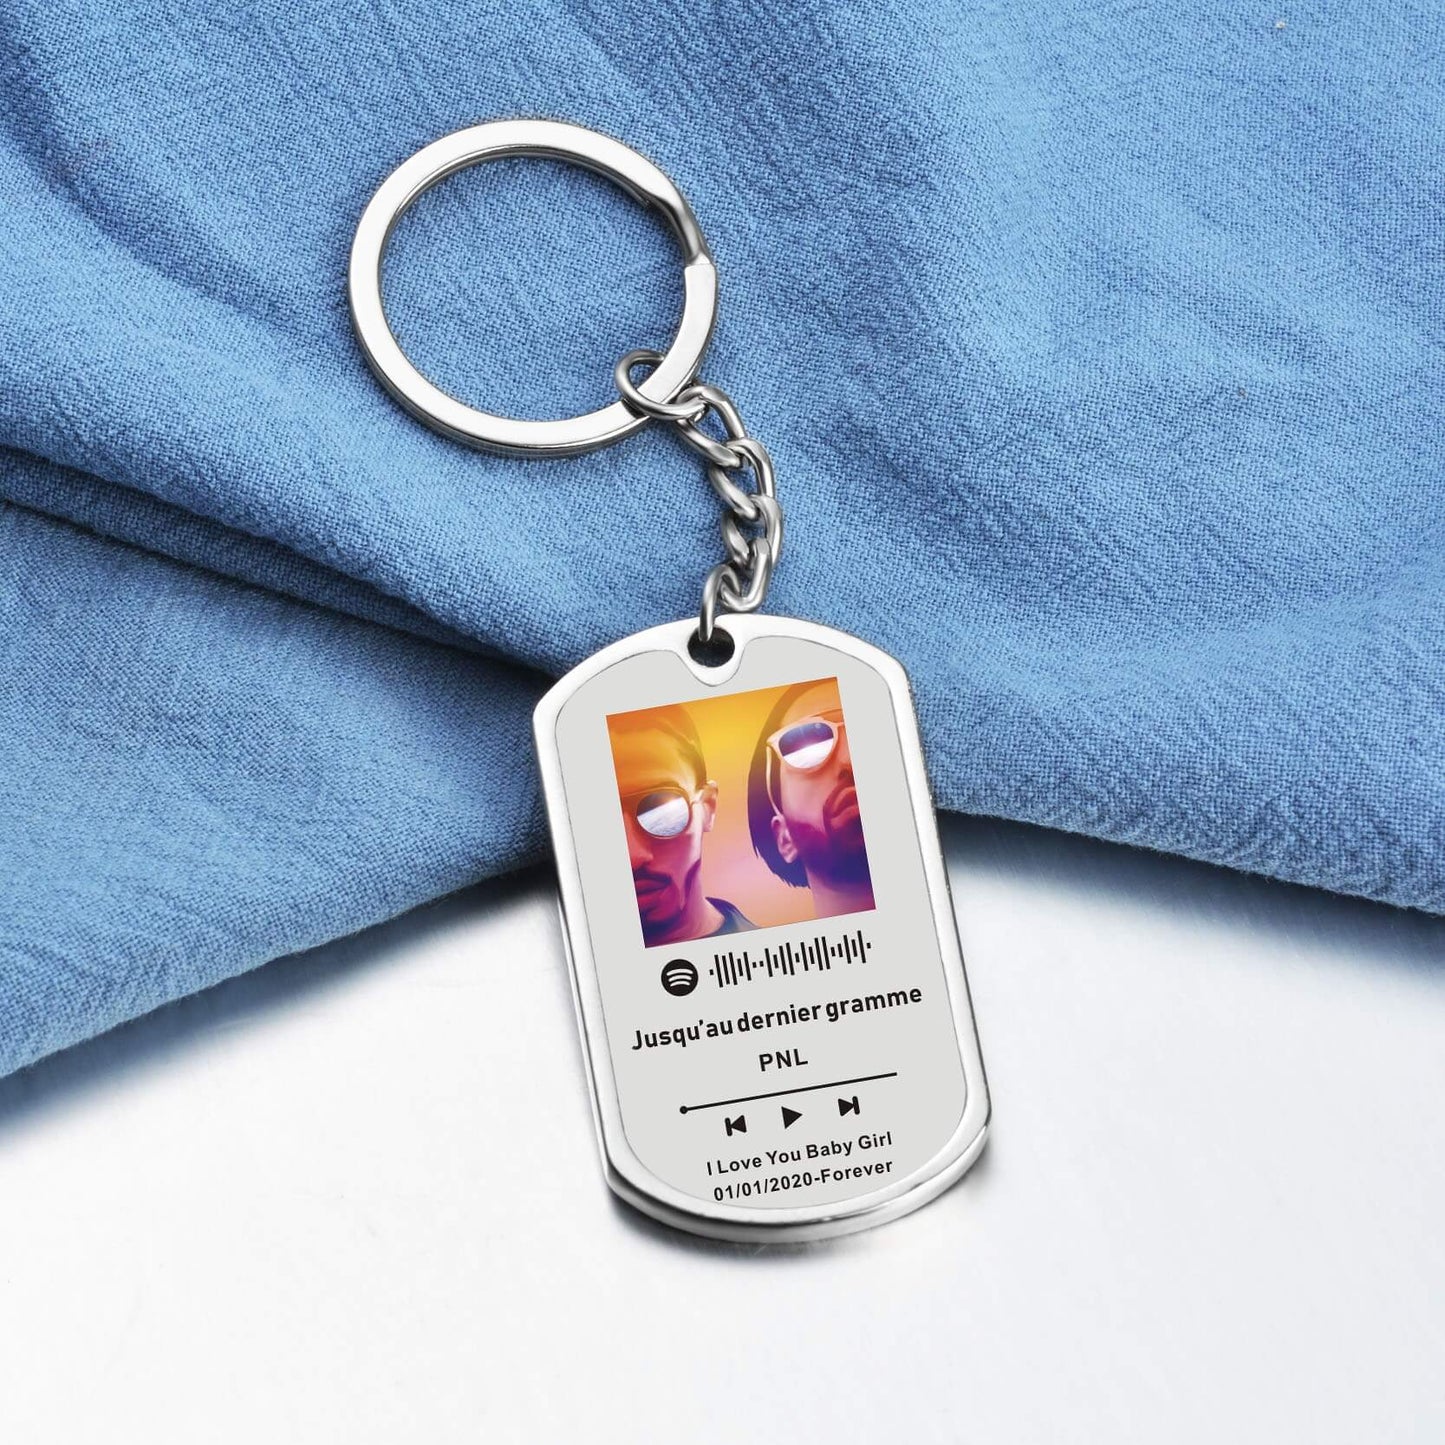 Chaveiro de Inox Personalizado Com Sua Foto e Música do Spotify